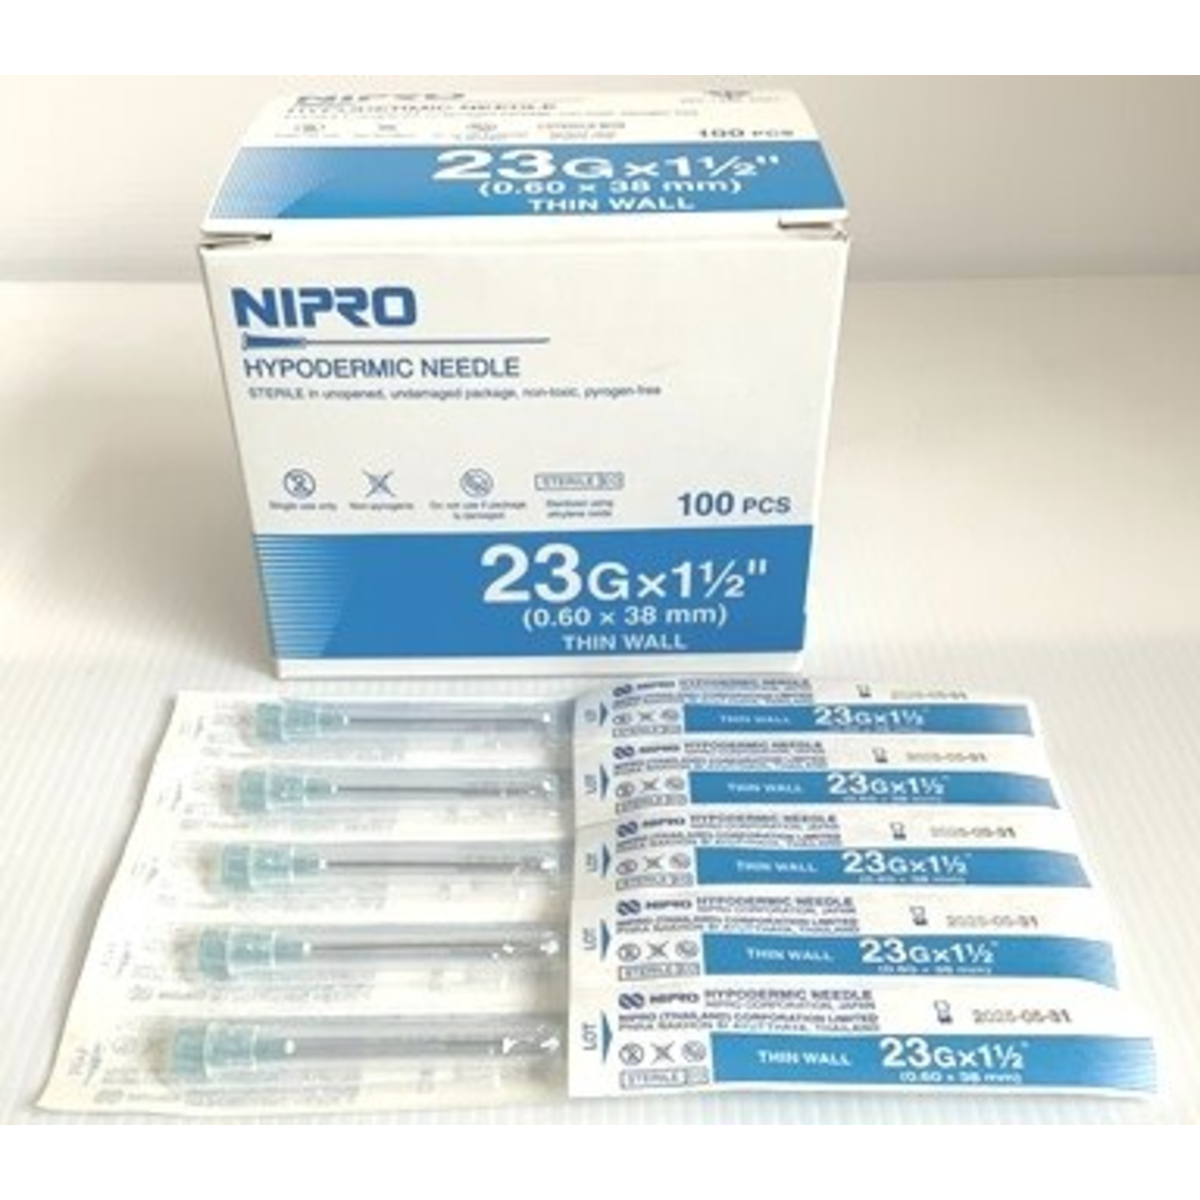 NIPRO เข็มฉีดยา ขนาด 23G x 1 1/2 (ซอง)